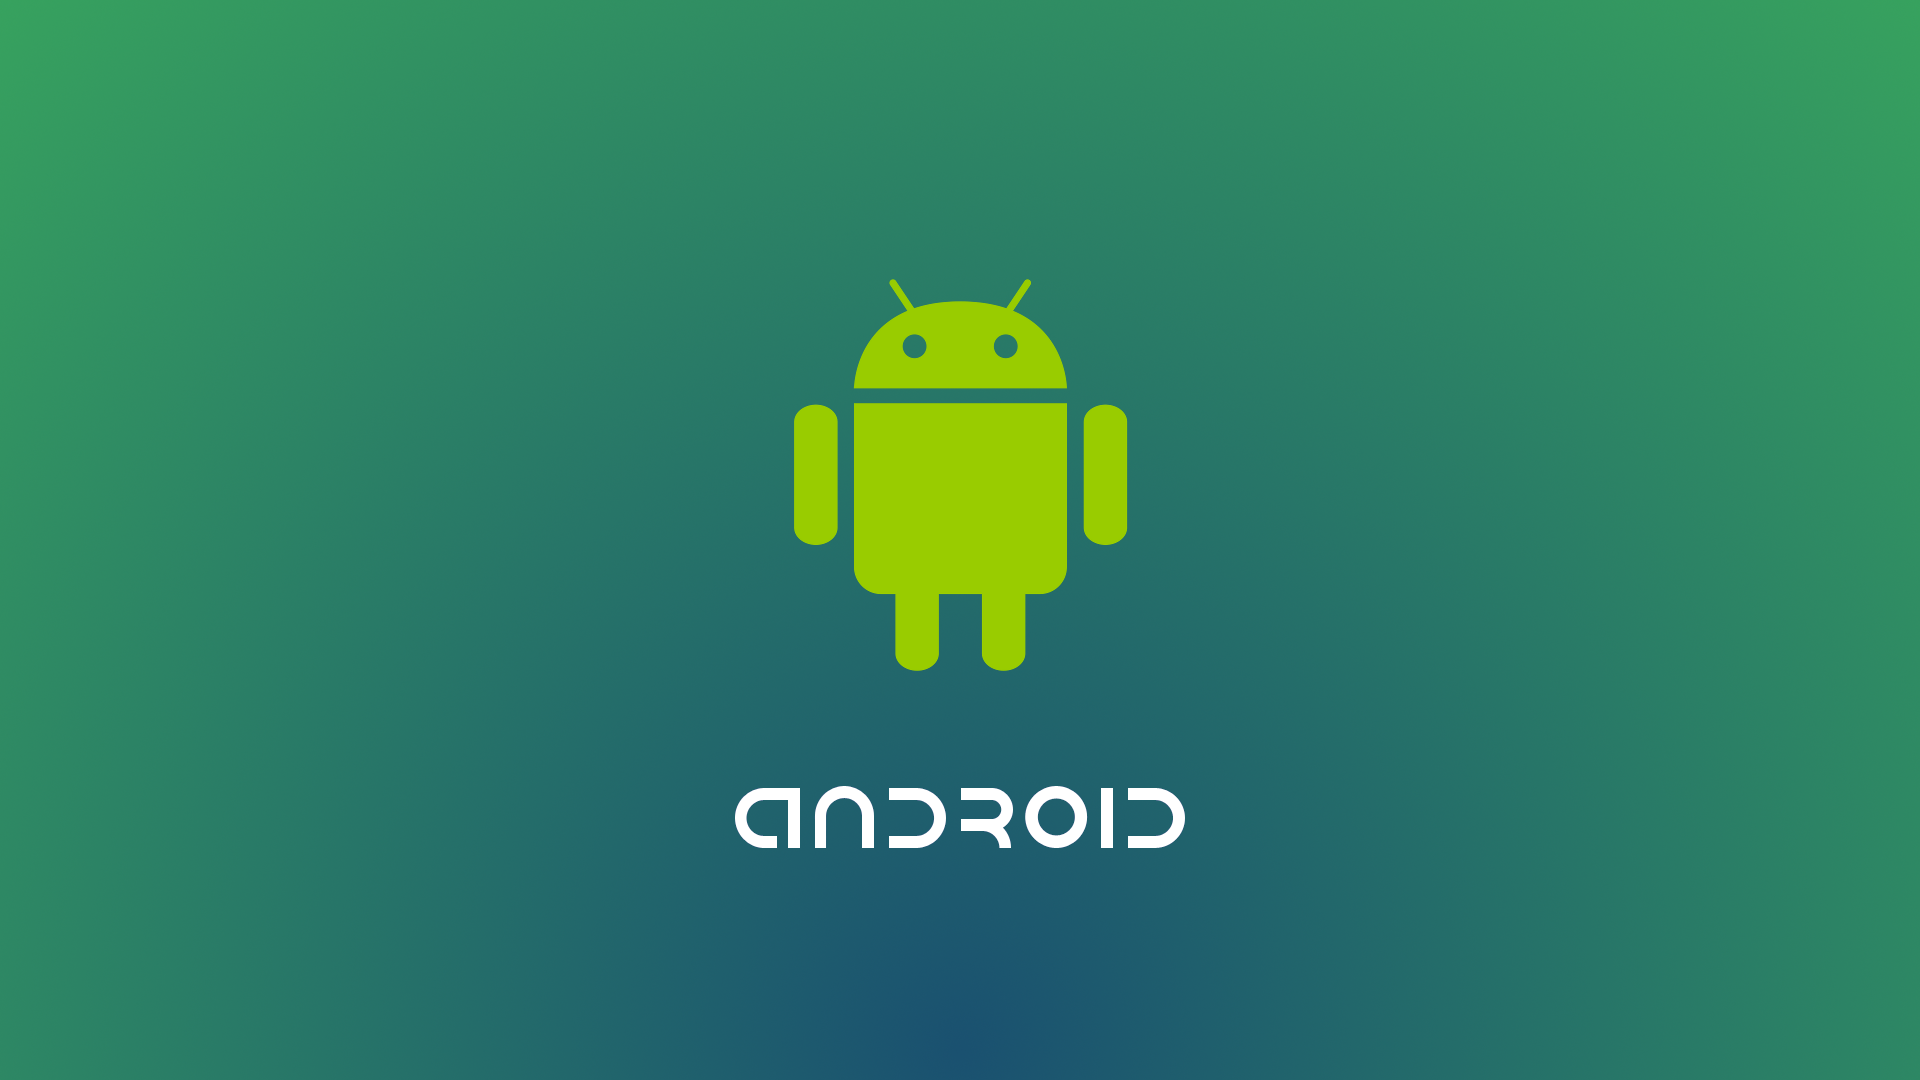 Android ist weiterhin unangefochtener Marktführer bei den mobilen Betriebssystemen - HarmonyOS hat bereits einen Anteil von 2%